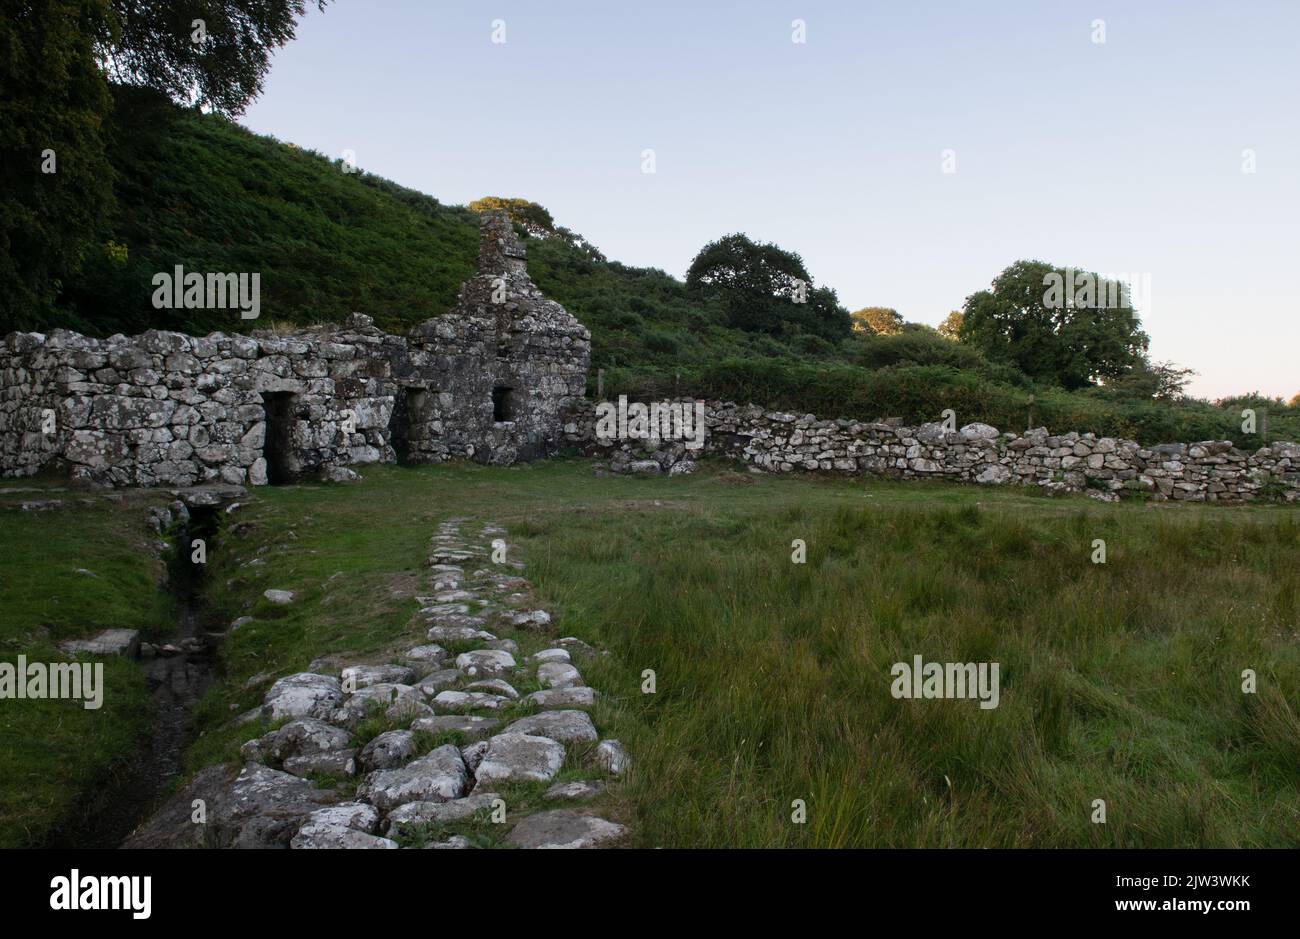 The Holy Well of Ffynnon Gybi, Llangybi, Gwynedd, Wales, UK Stock Photo